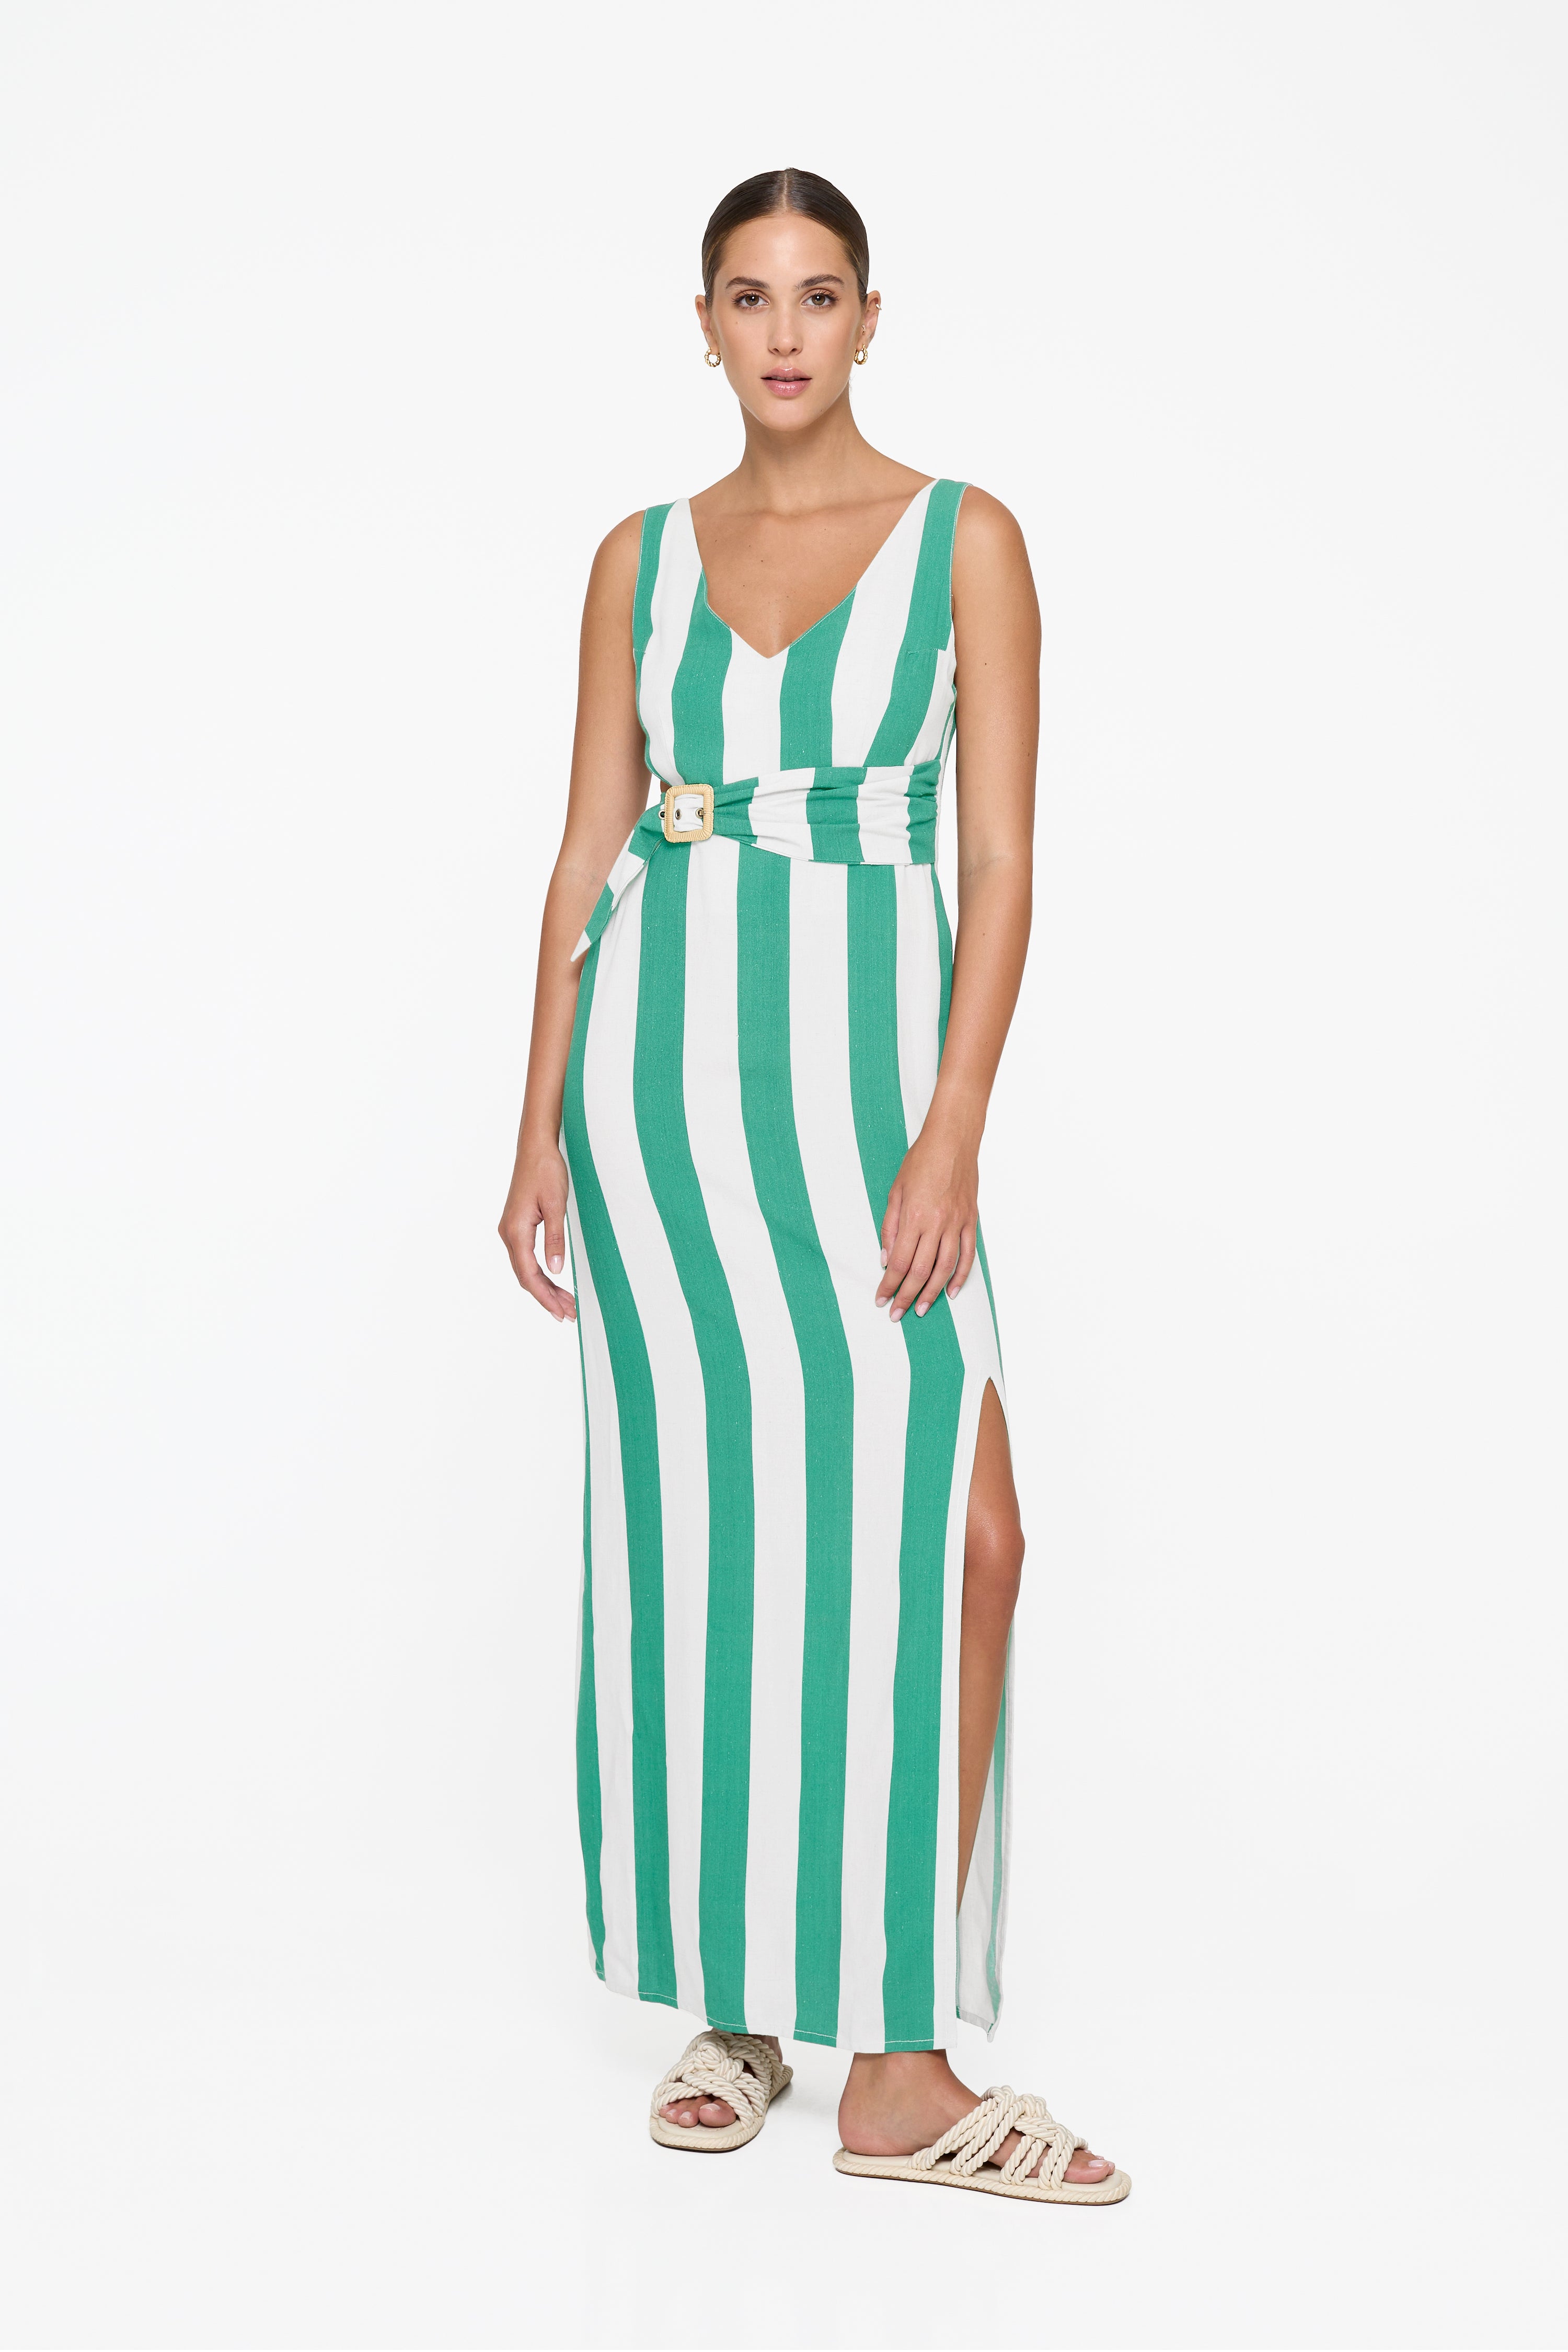 Evie Cutout Maxi Dress - Billiard Linen